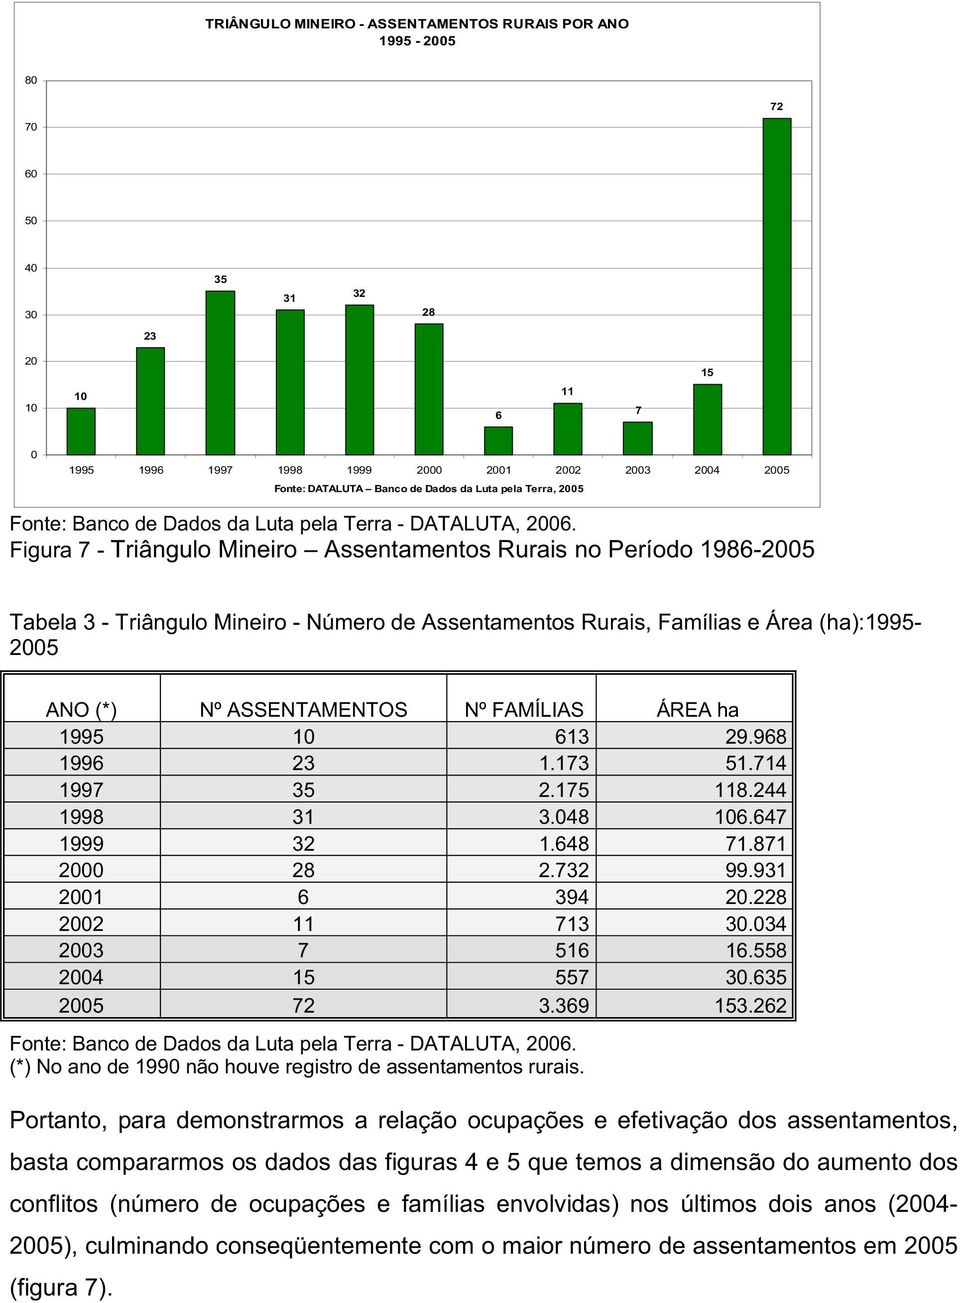 Figura 7 - Triângulo Mineiro Assentamentos Rurais no Período 1986-2005 Tabela 3 - Triângulo Mineiro - Número de Assentamentos Rurais, Famílias e Área (ha):1995-2005 ANO (*) Nº ASSENTAMENTOS Nº